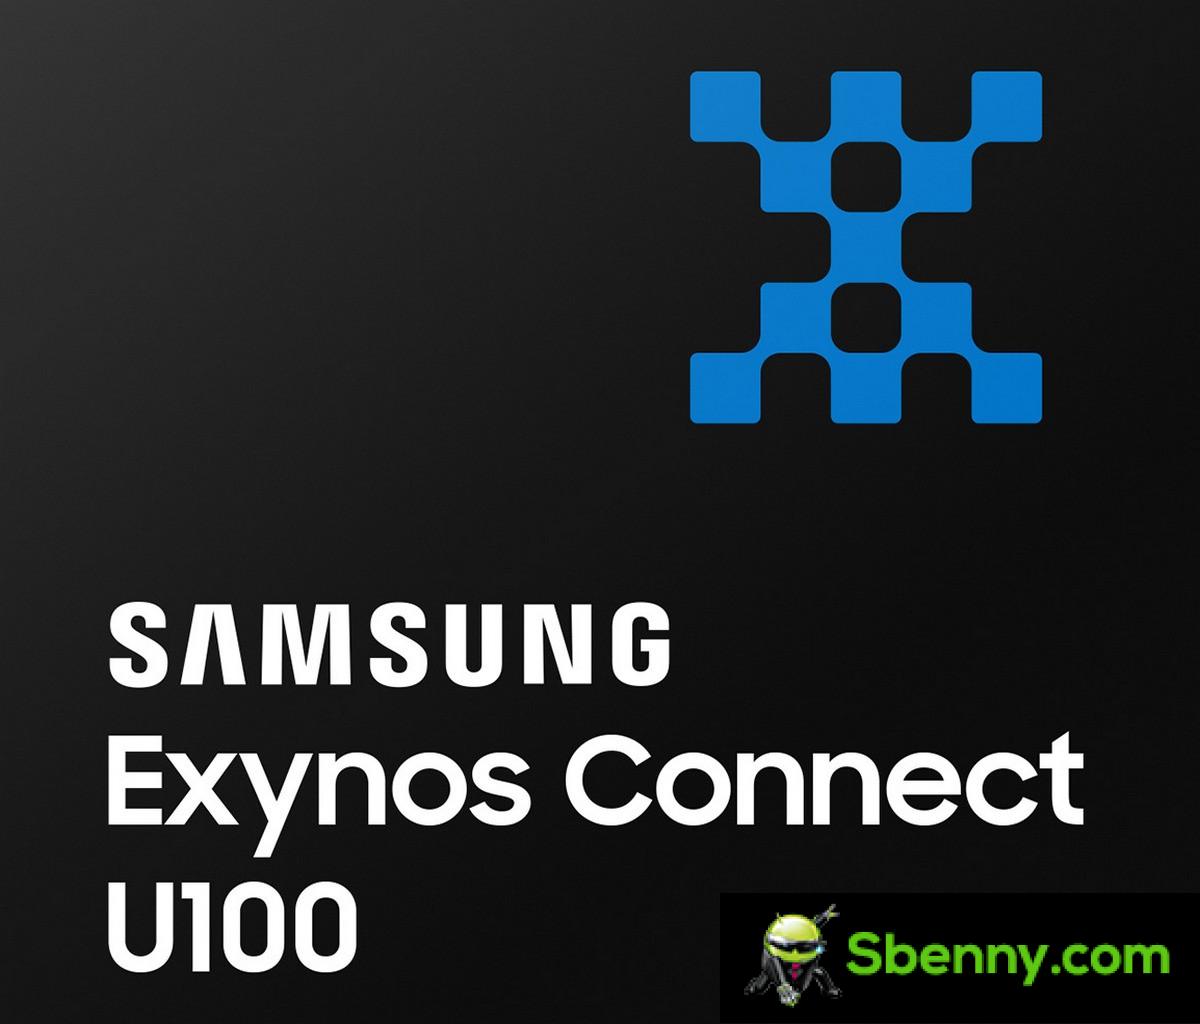 Samsung presenta Exynos Connect U100, su chipset de ultra banda ancha